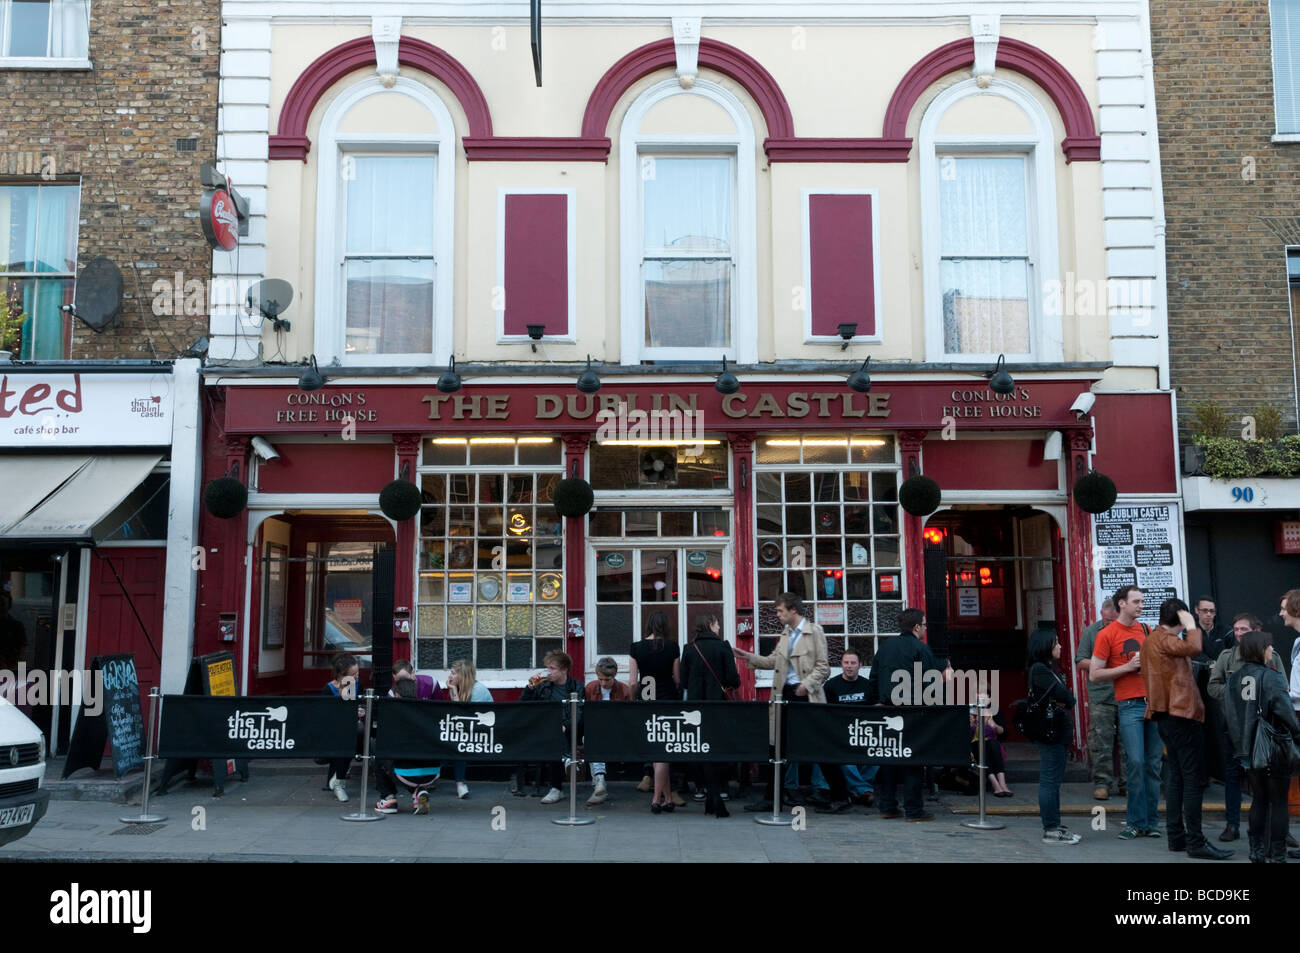 The Dublin Castle pub, London, UK Stock Photo